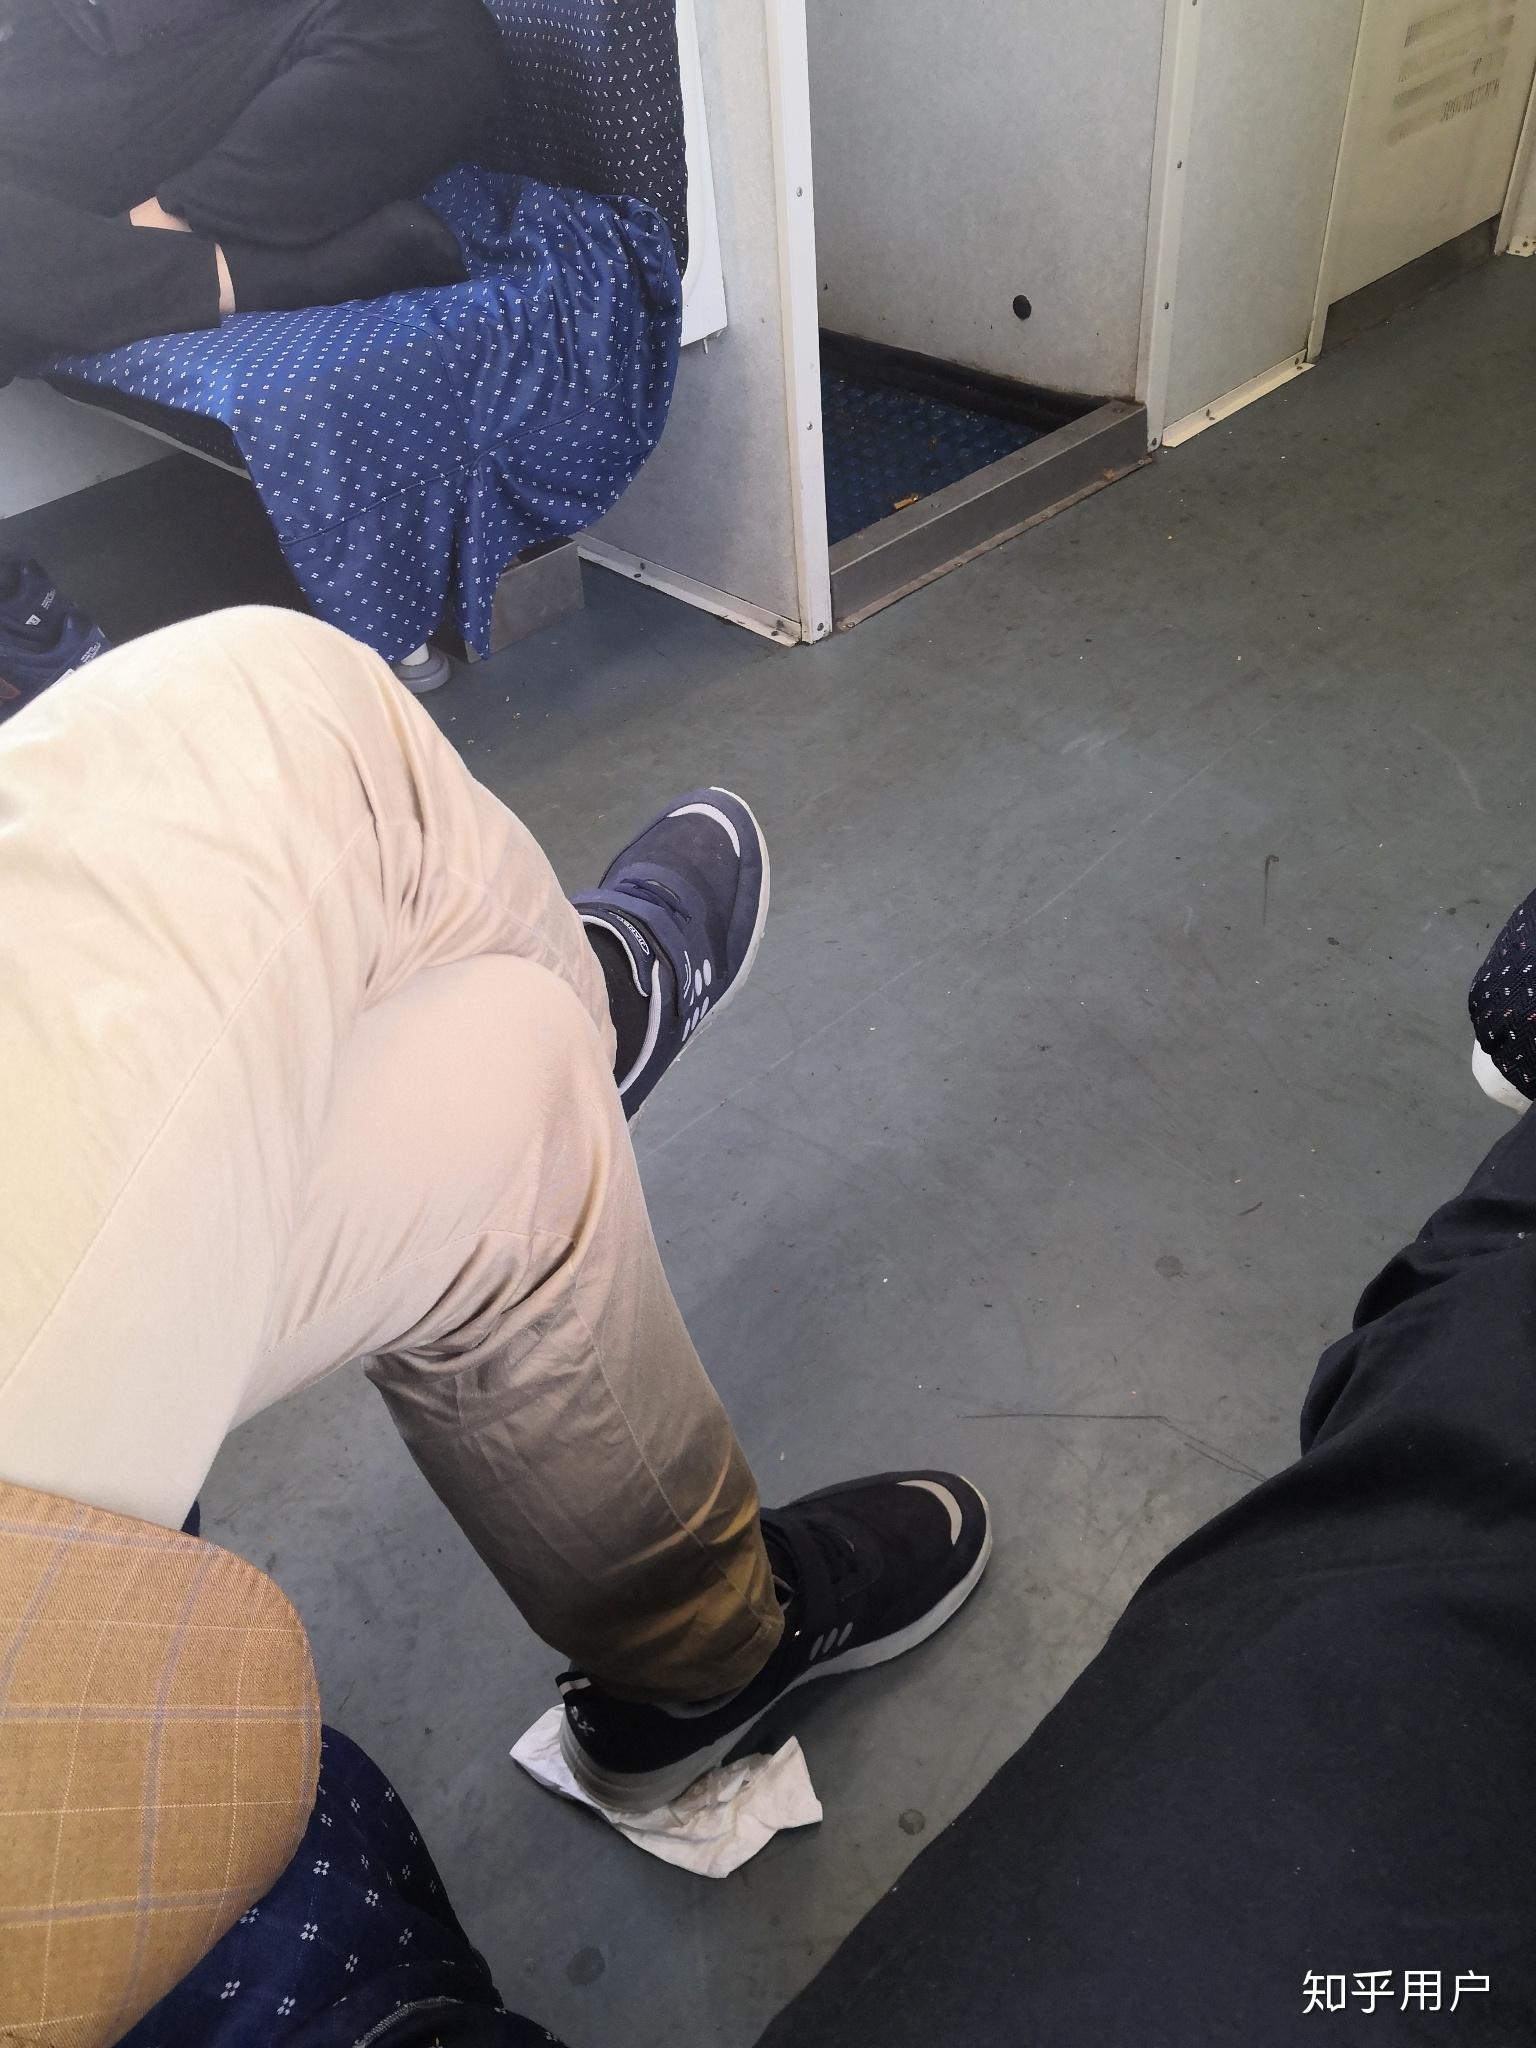 怎么看待在火车上脱鞋的人? 